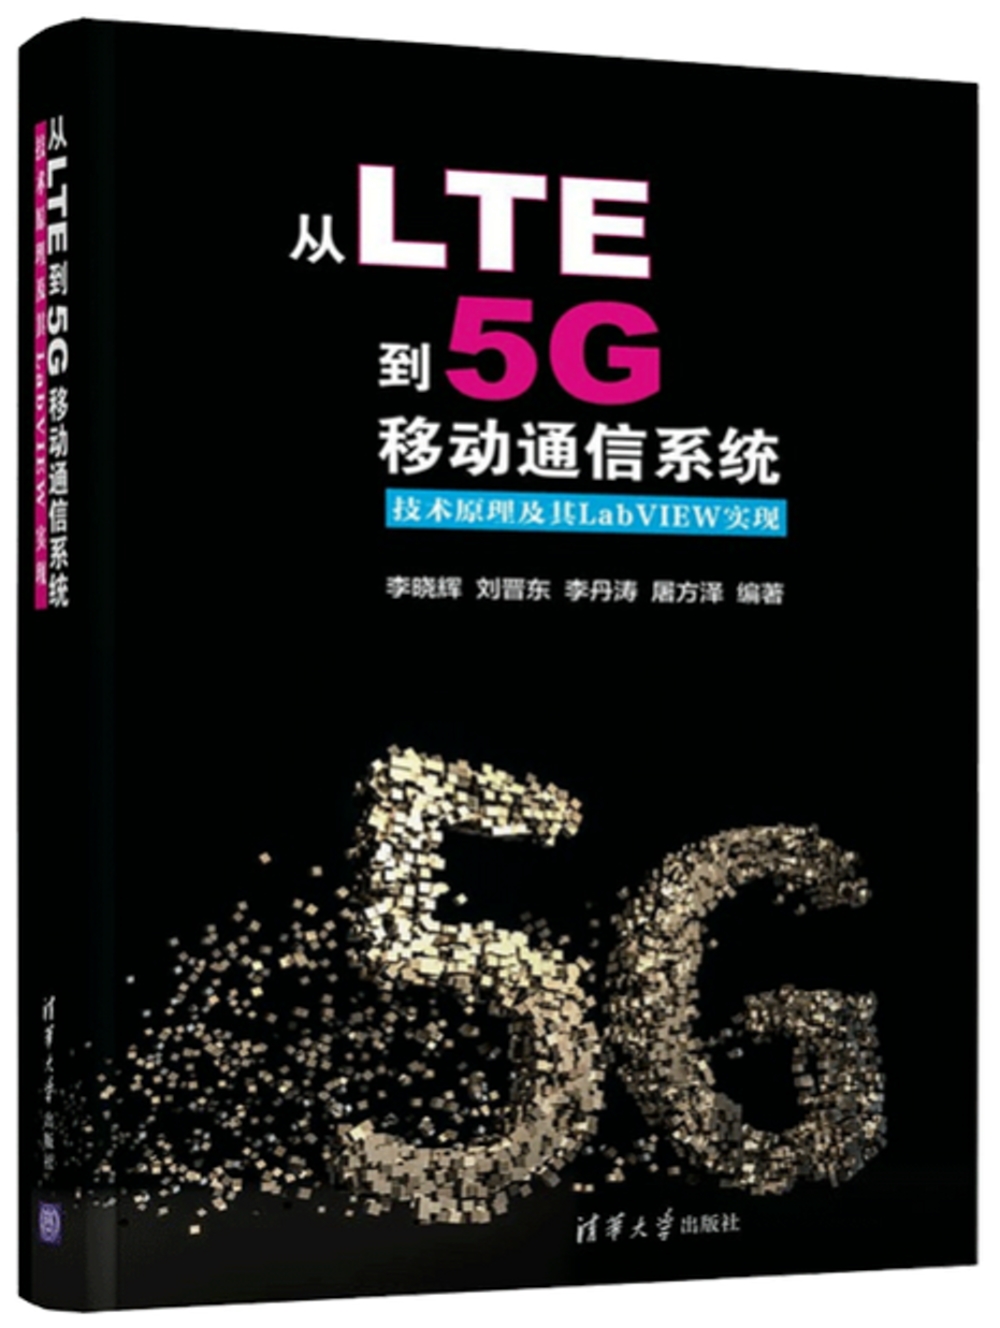 從LTE到5G移動通信系統